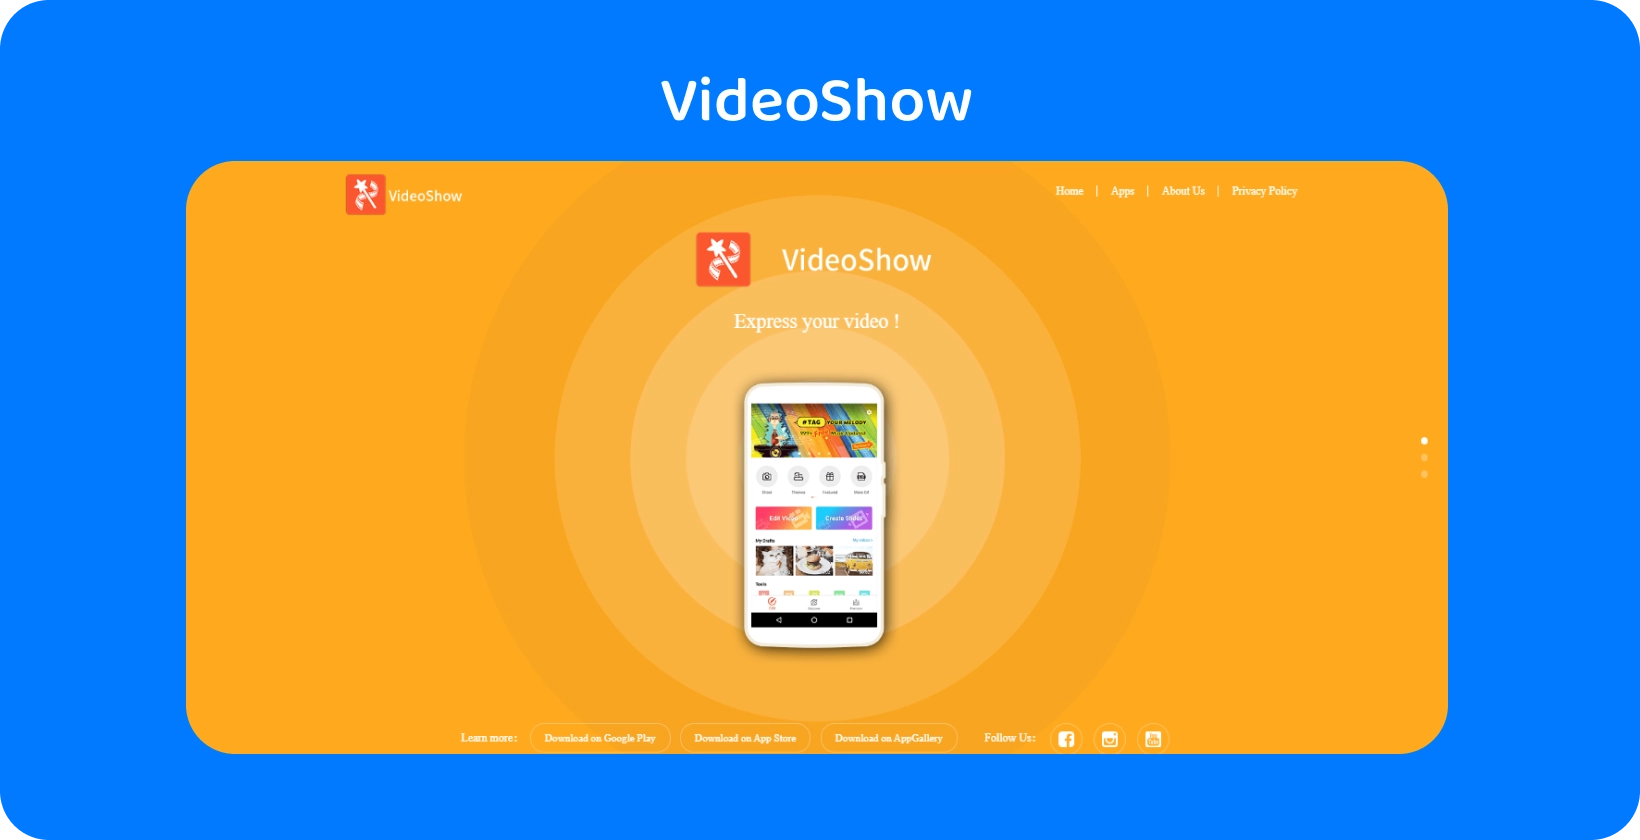 Interfaccia dell'app VideoShow su uno schermo, che offre semplici strumenti e funzionalità di editing video su uno sfondo arancione vivace.